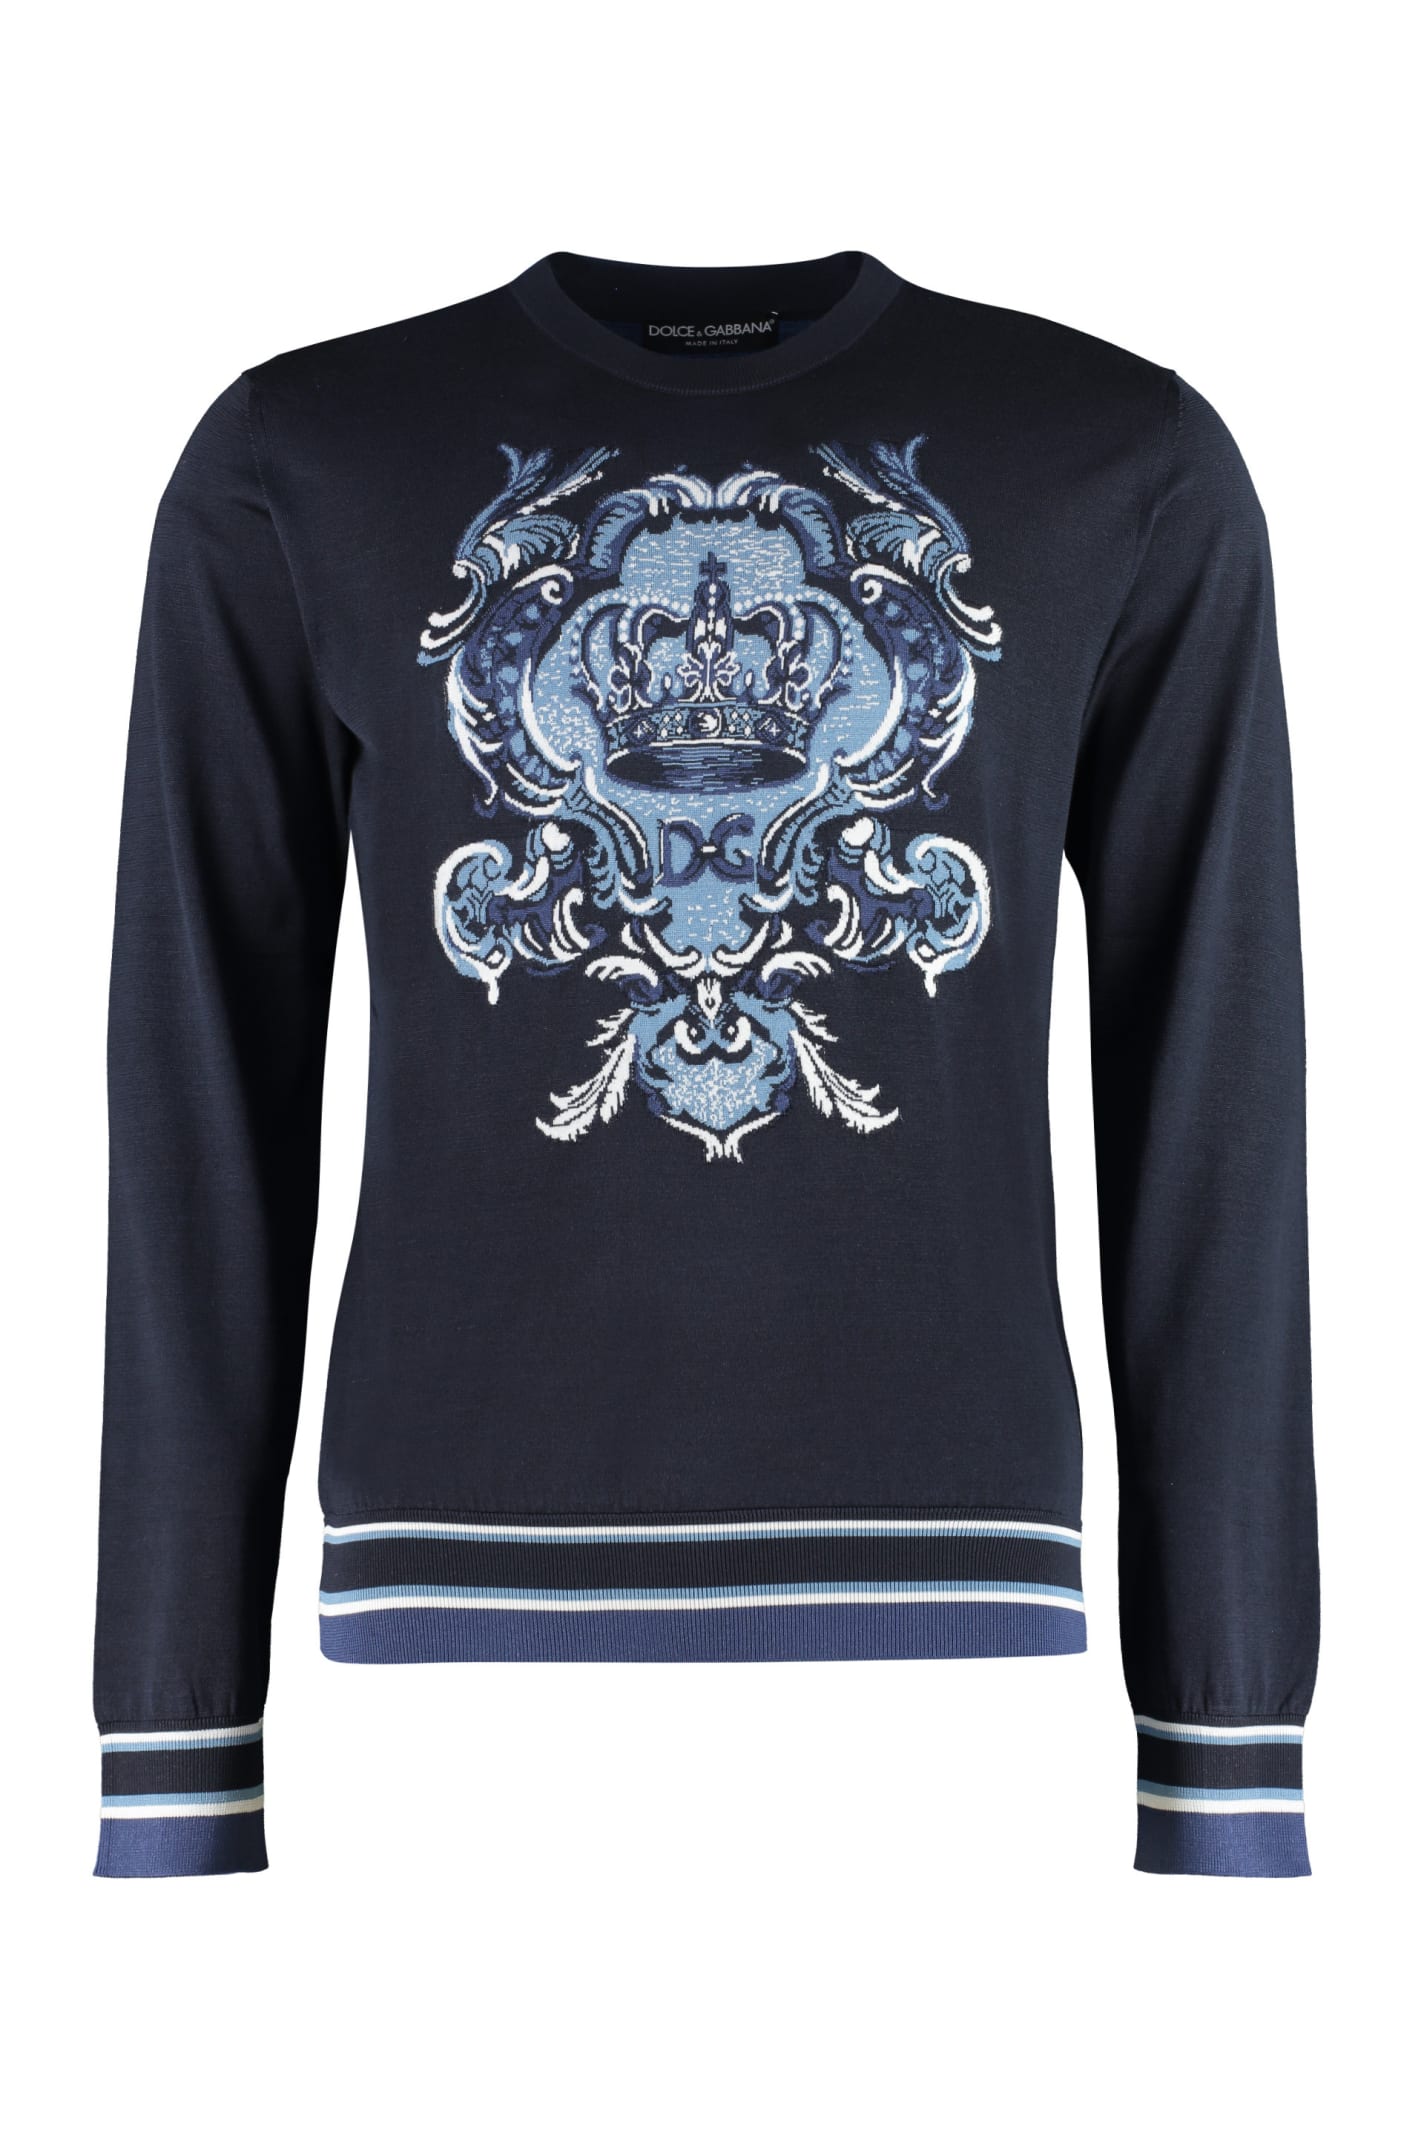 Dolce & Gabbana Intarsia Silk Sweater